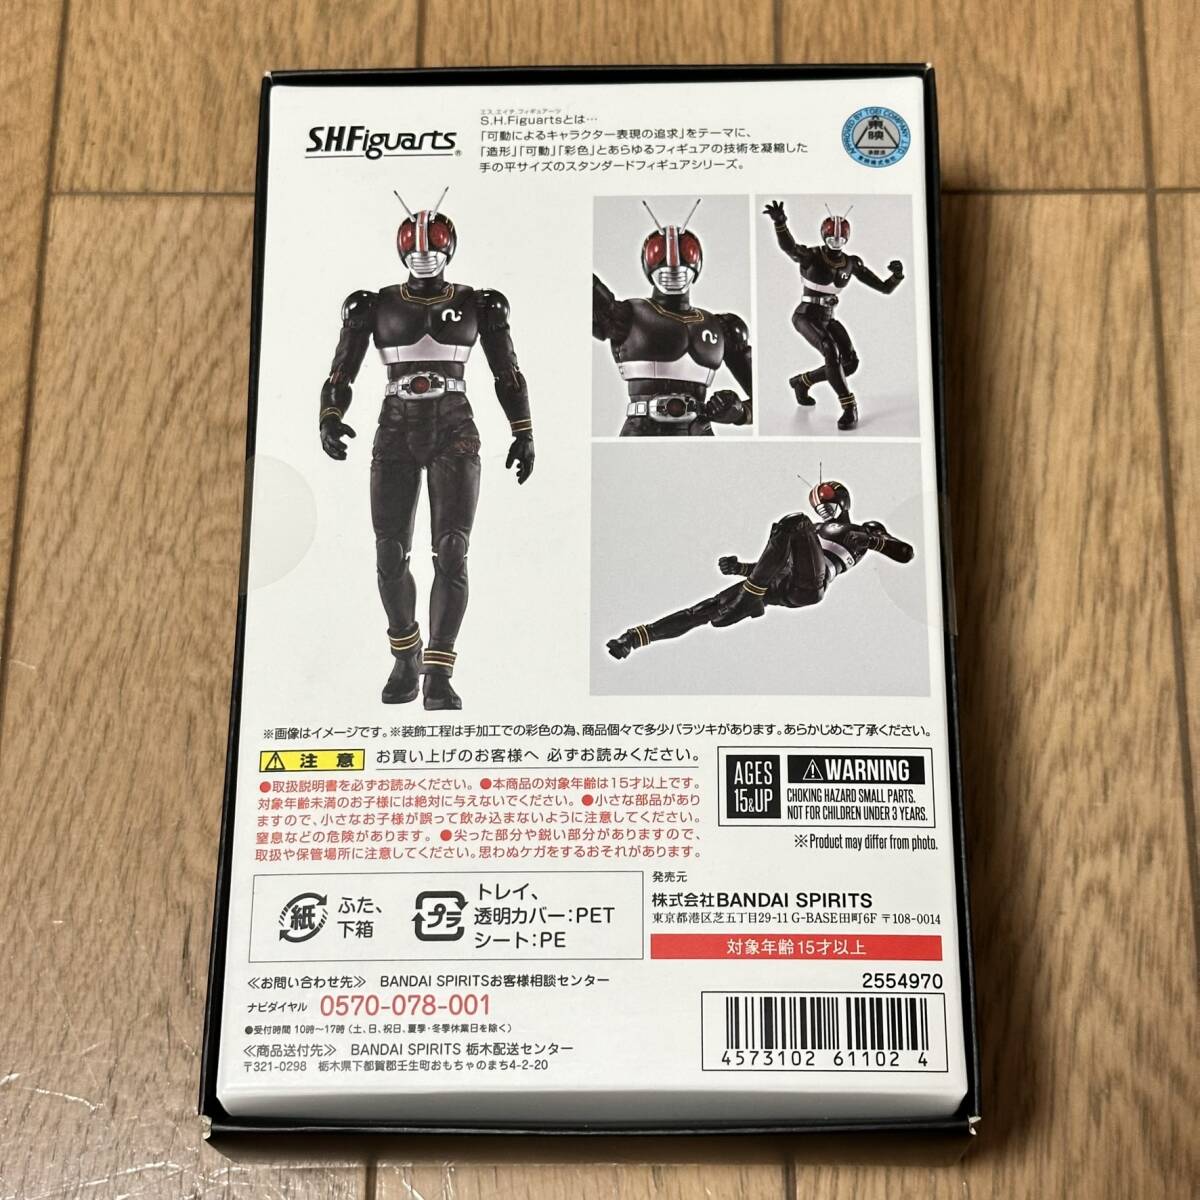 1 иен ~ новый товар нераспечатанный S.H.Figuarts( подлинный . гравюра производства закон ) Kamen Rider BLACK figuarts BANDAI